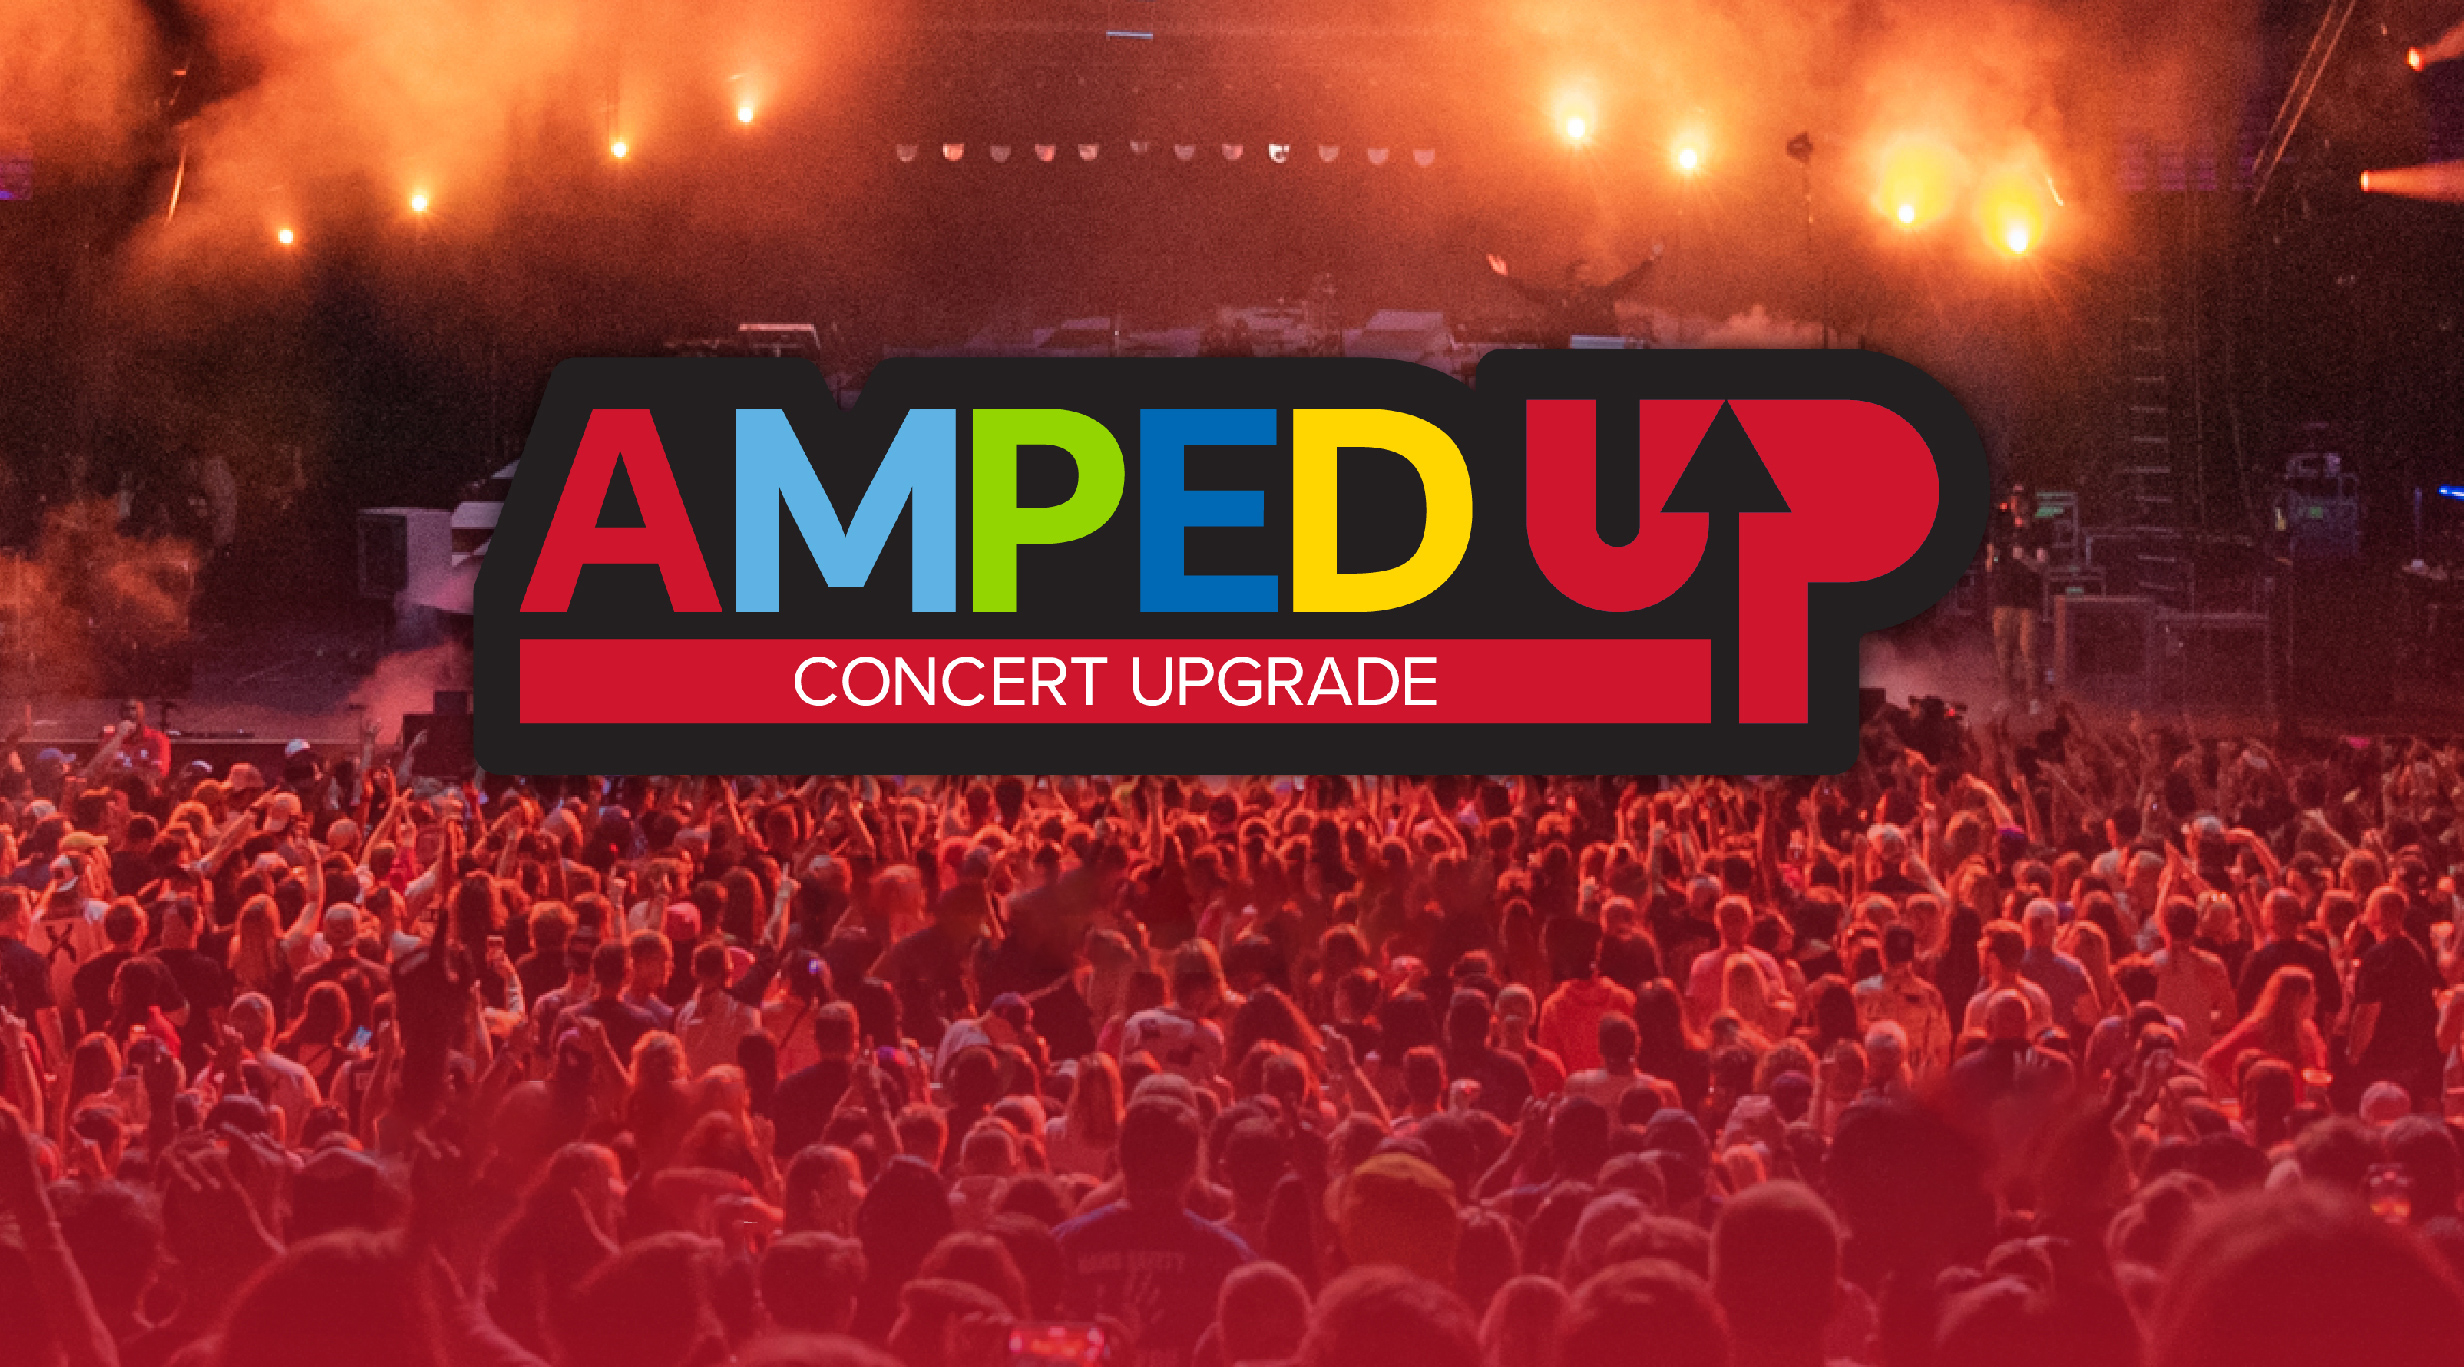 Dierks Bentley Amped Up Concert Upgrade- Not A Concert Ticket